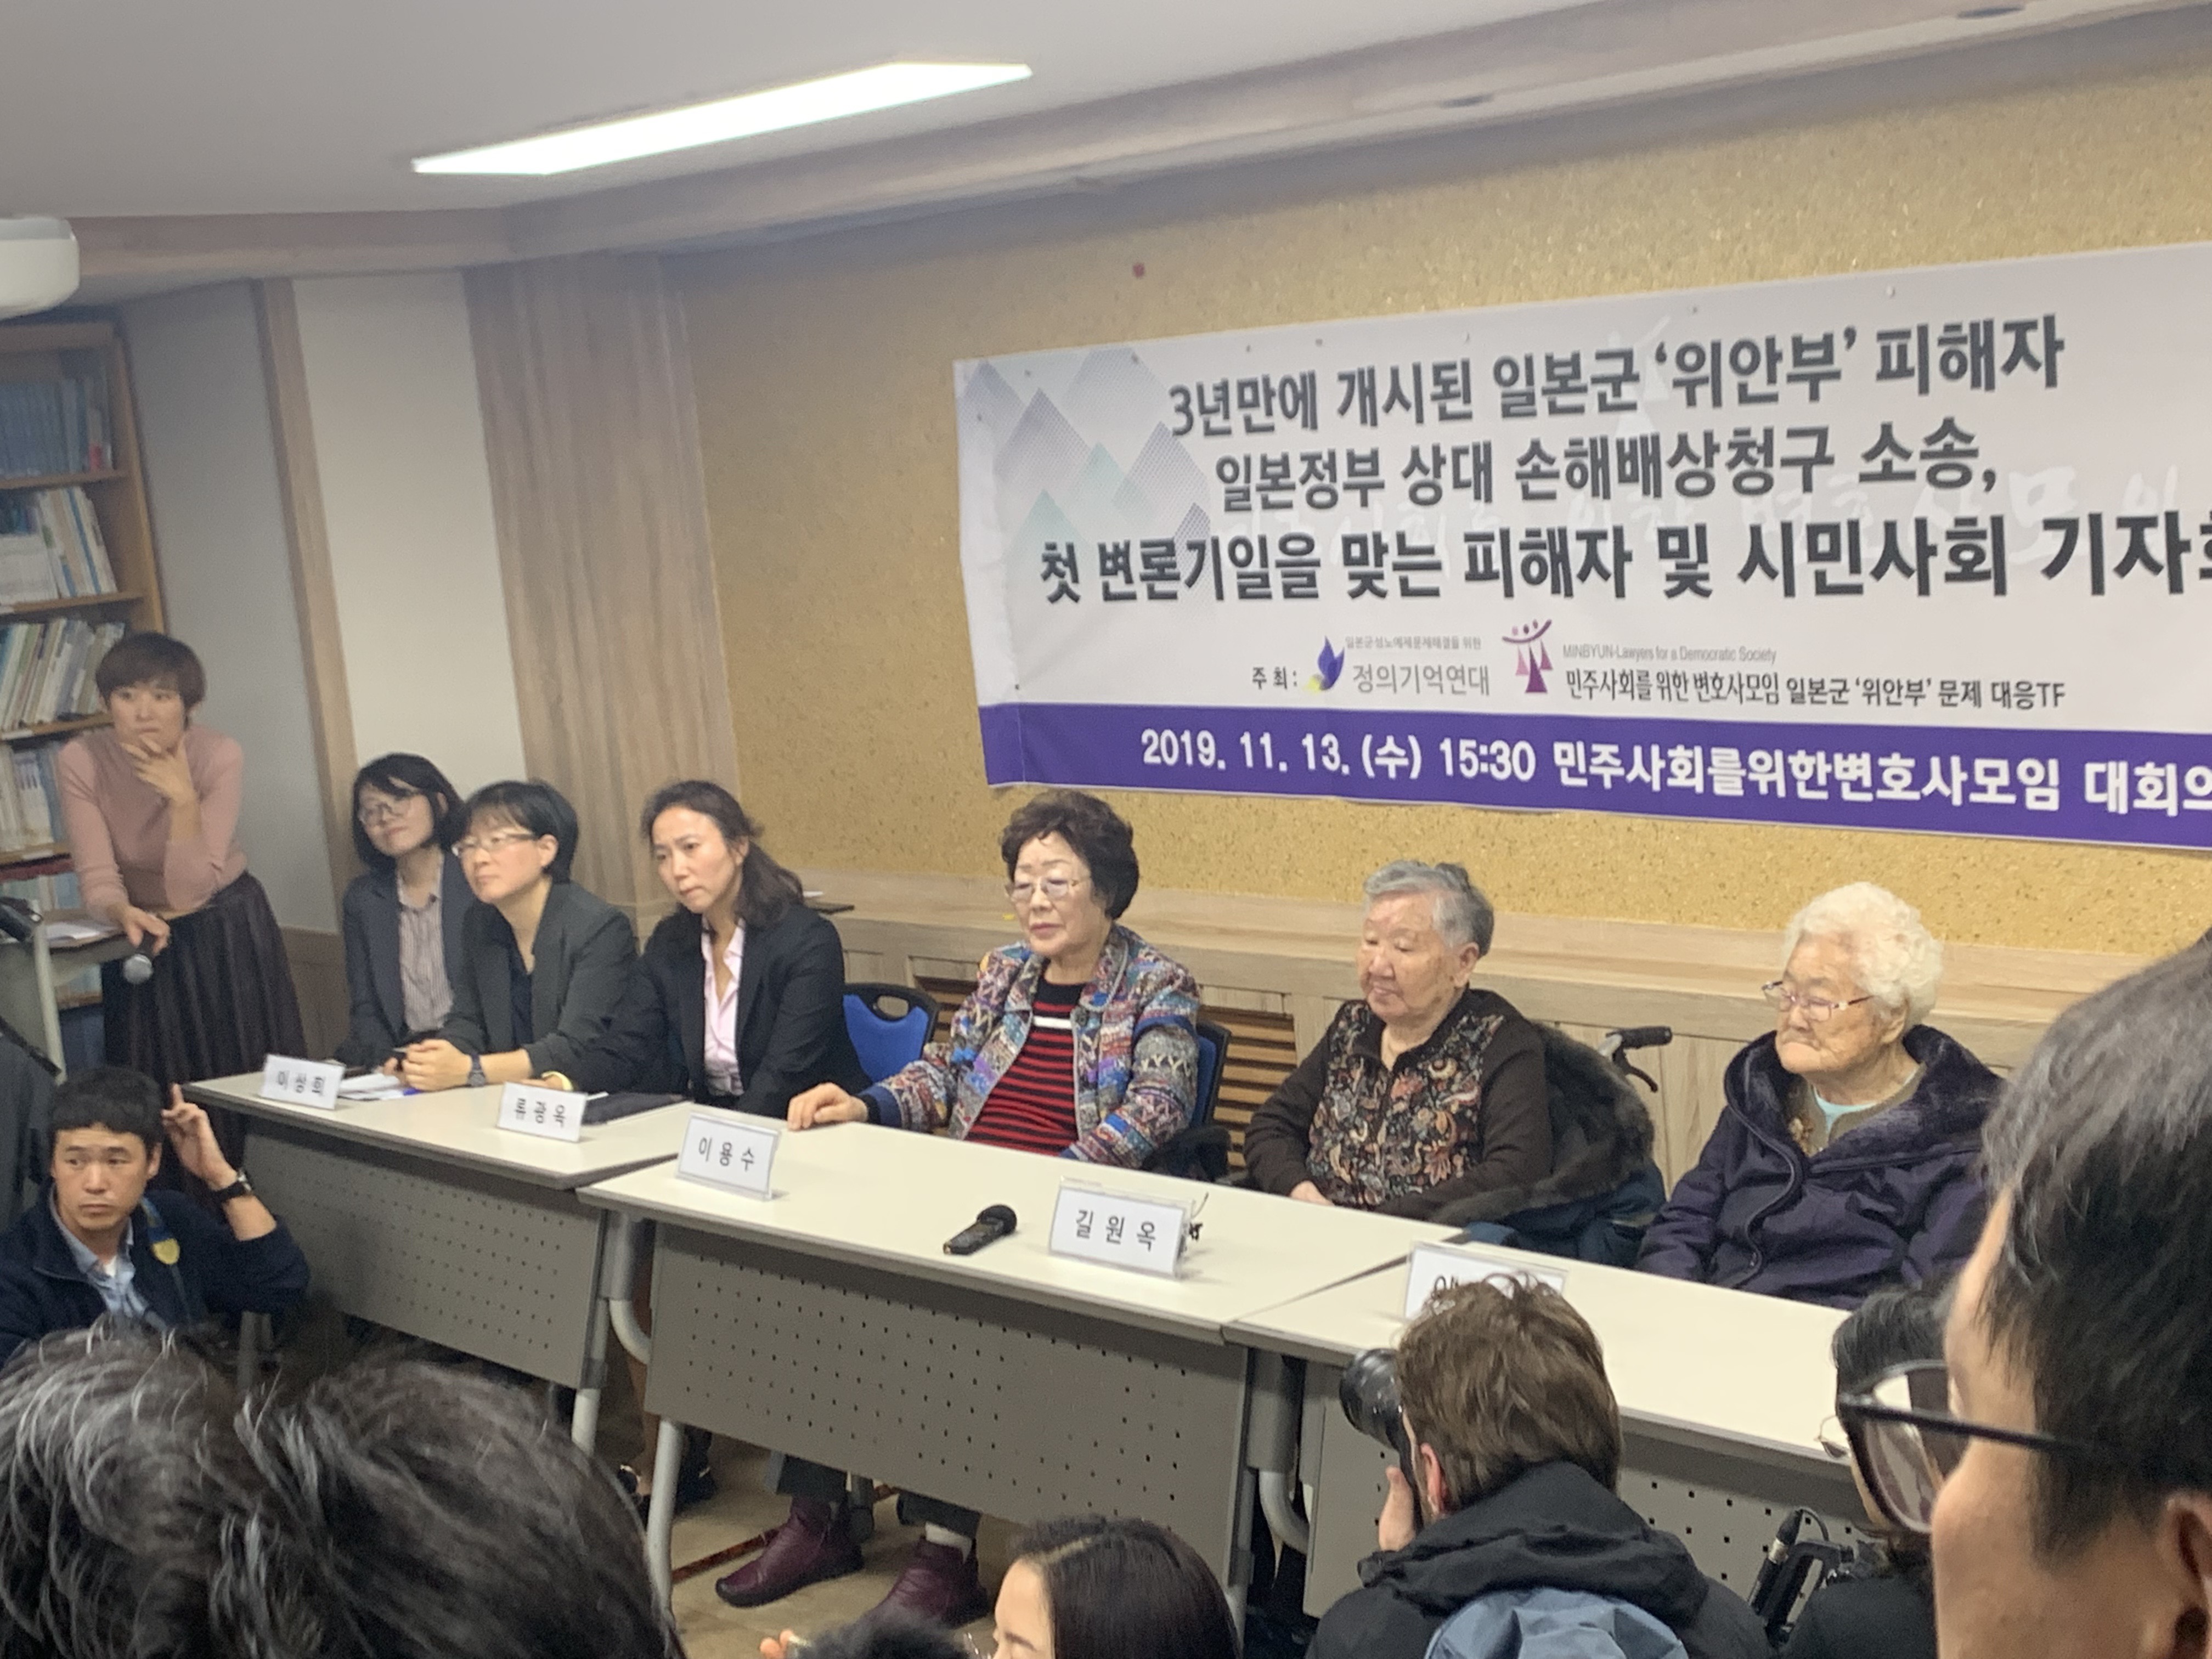 2019년 11월 13일 민주사회를위한변호사모임 대회의실에서 일본군'위안부'피해자 손해배상청구 소송 첫 변론기일을 맞아 기자회견이 열렸다.